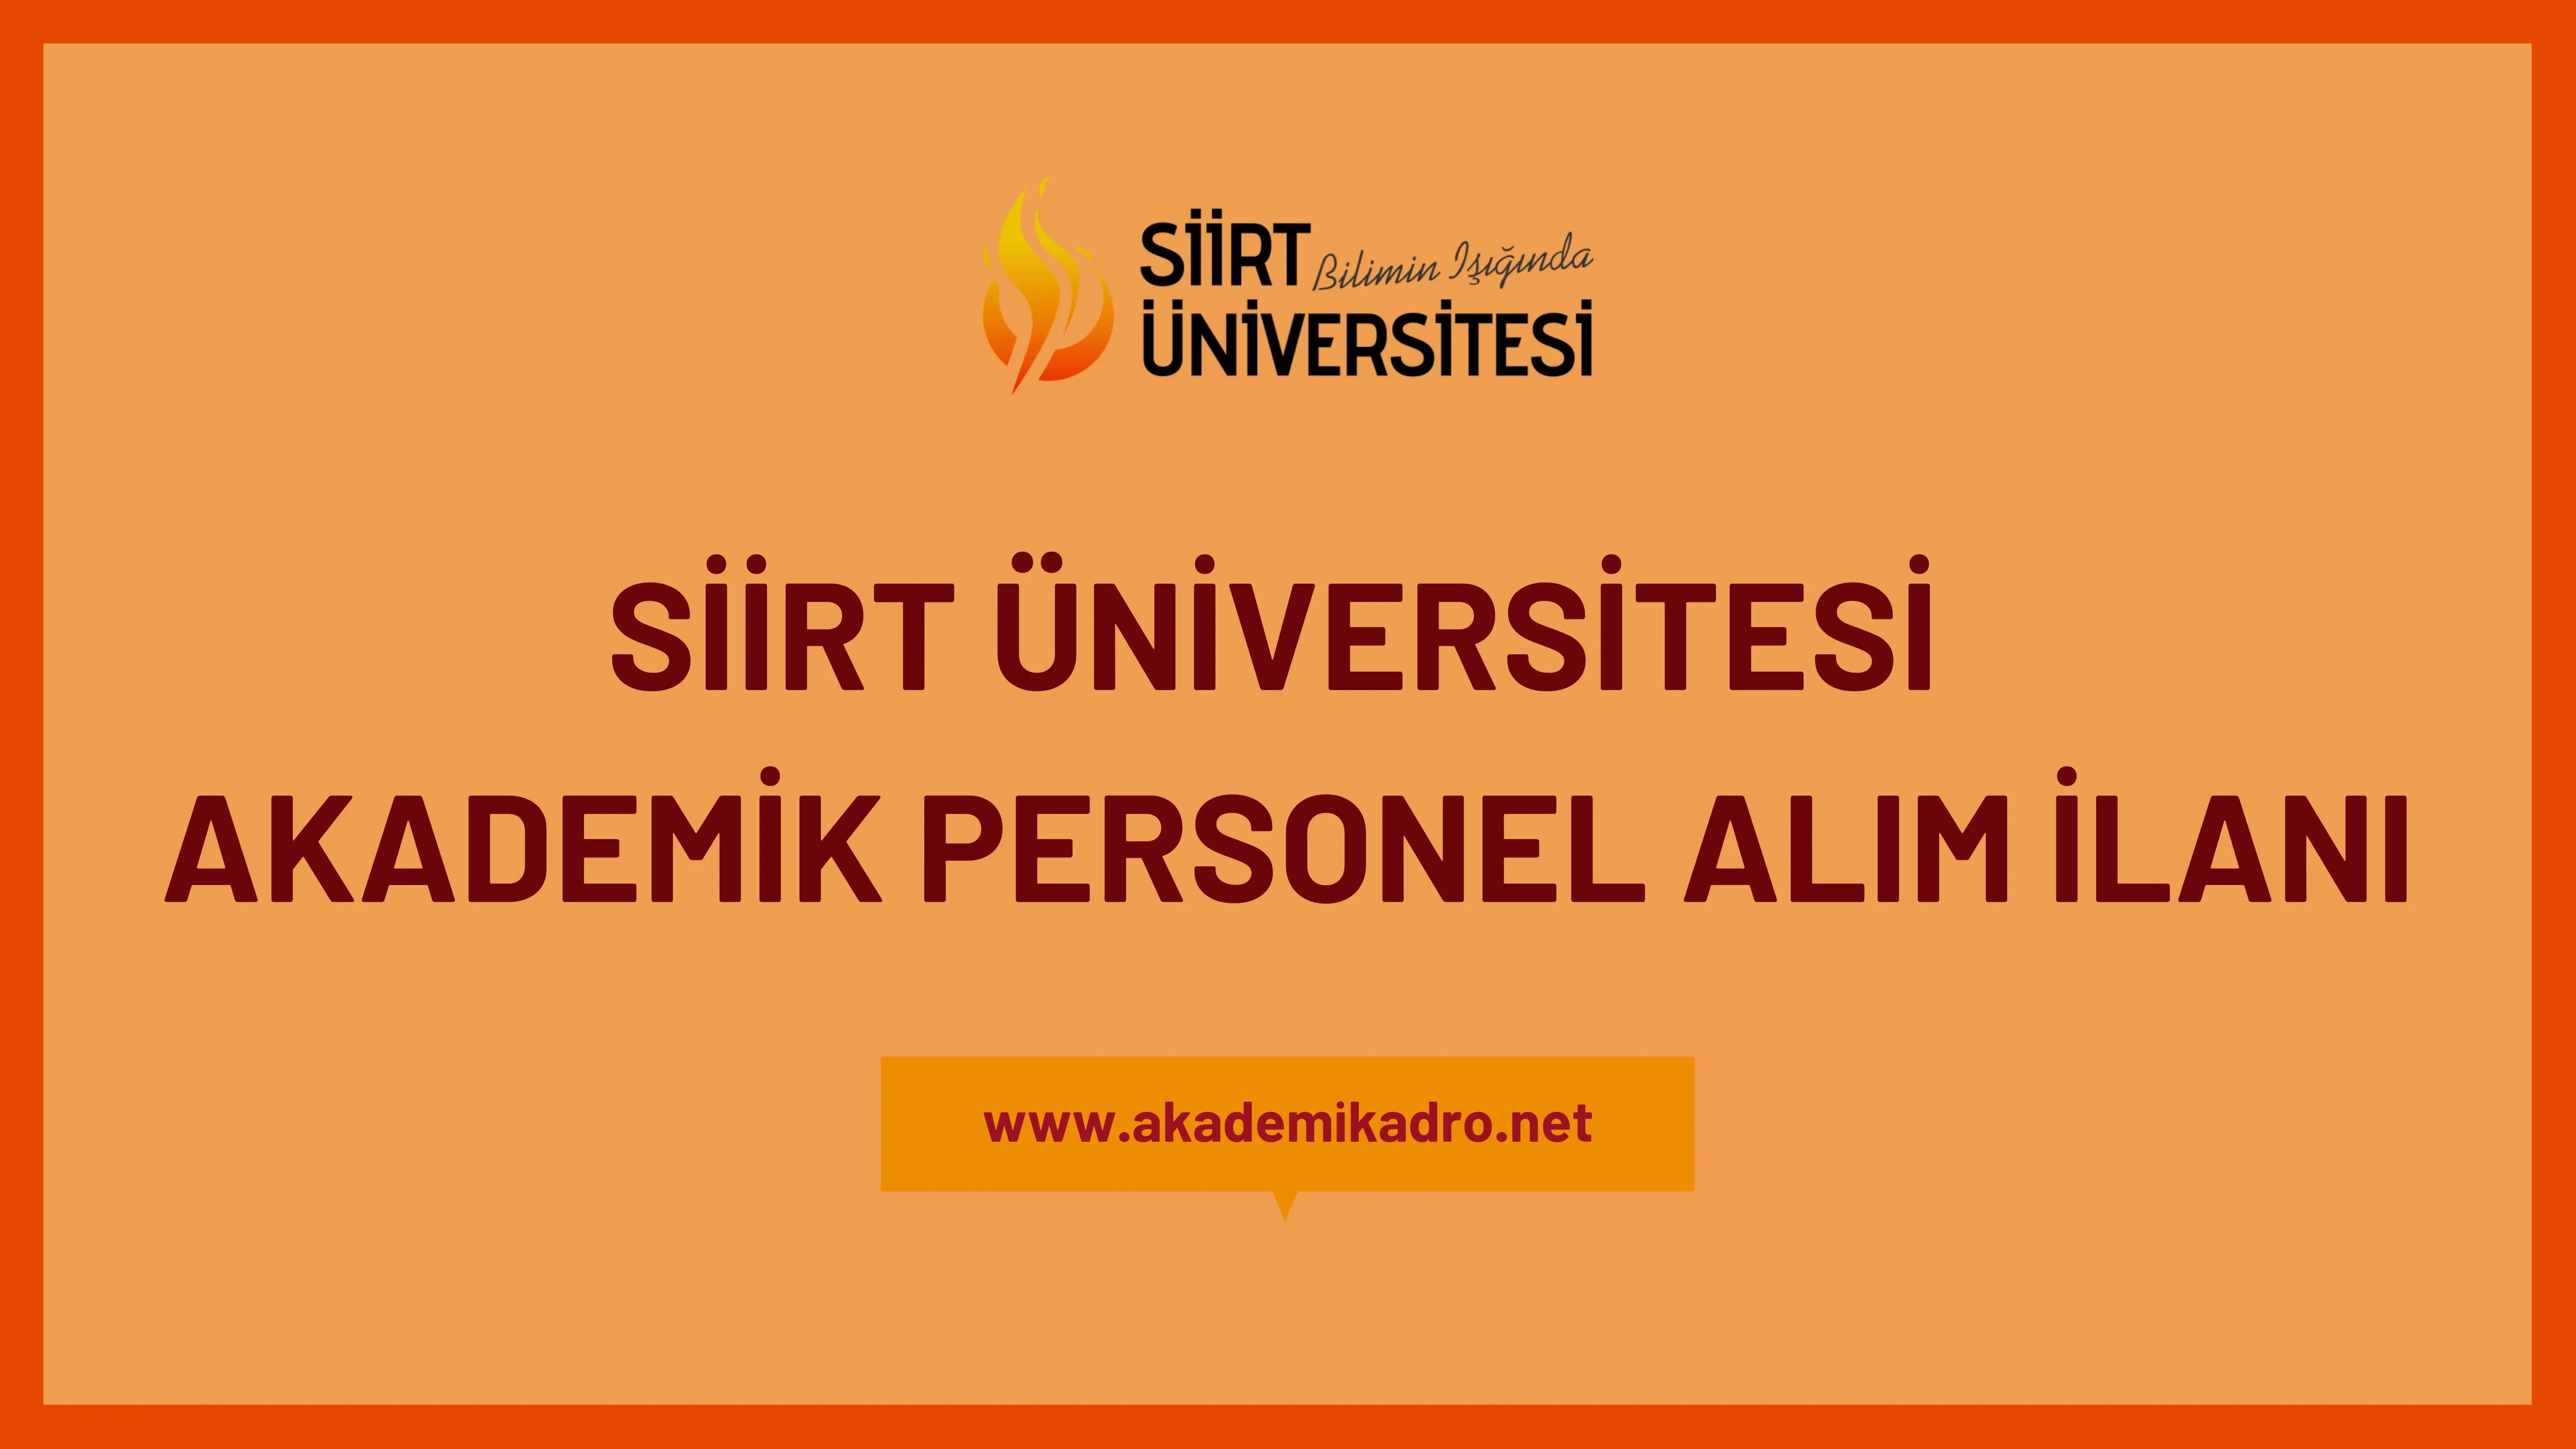 Siirt Üniversitesi birçok alandan 32 Akademik personel alacak.